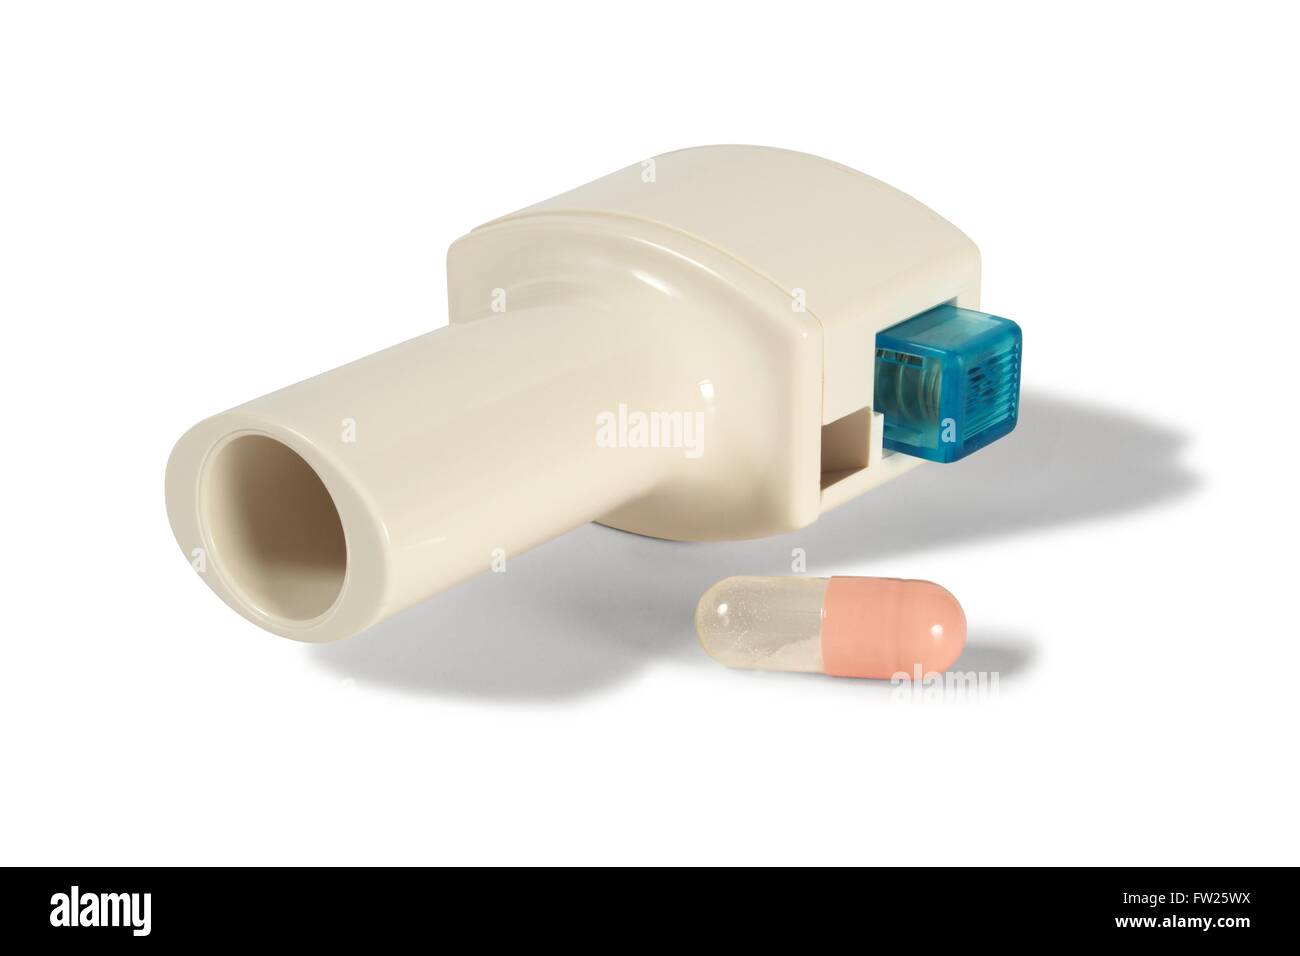 Asthma-Inhalator und Kapsel auf weißem Hintergrund Stockfotografie - Alamy